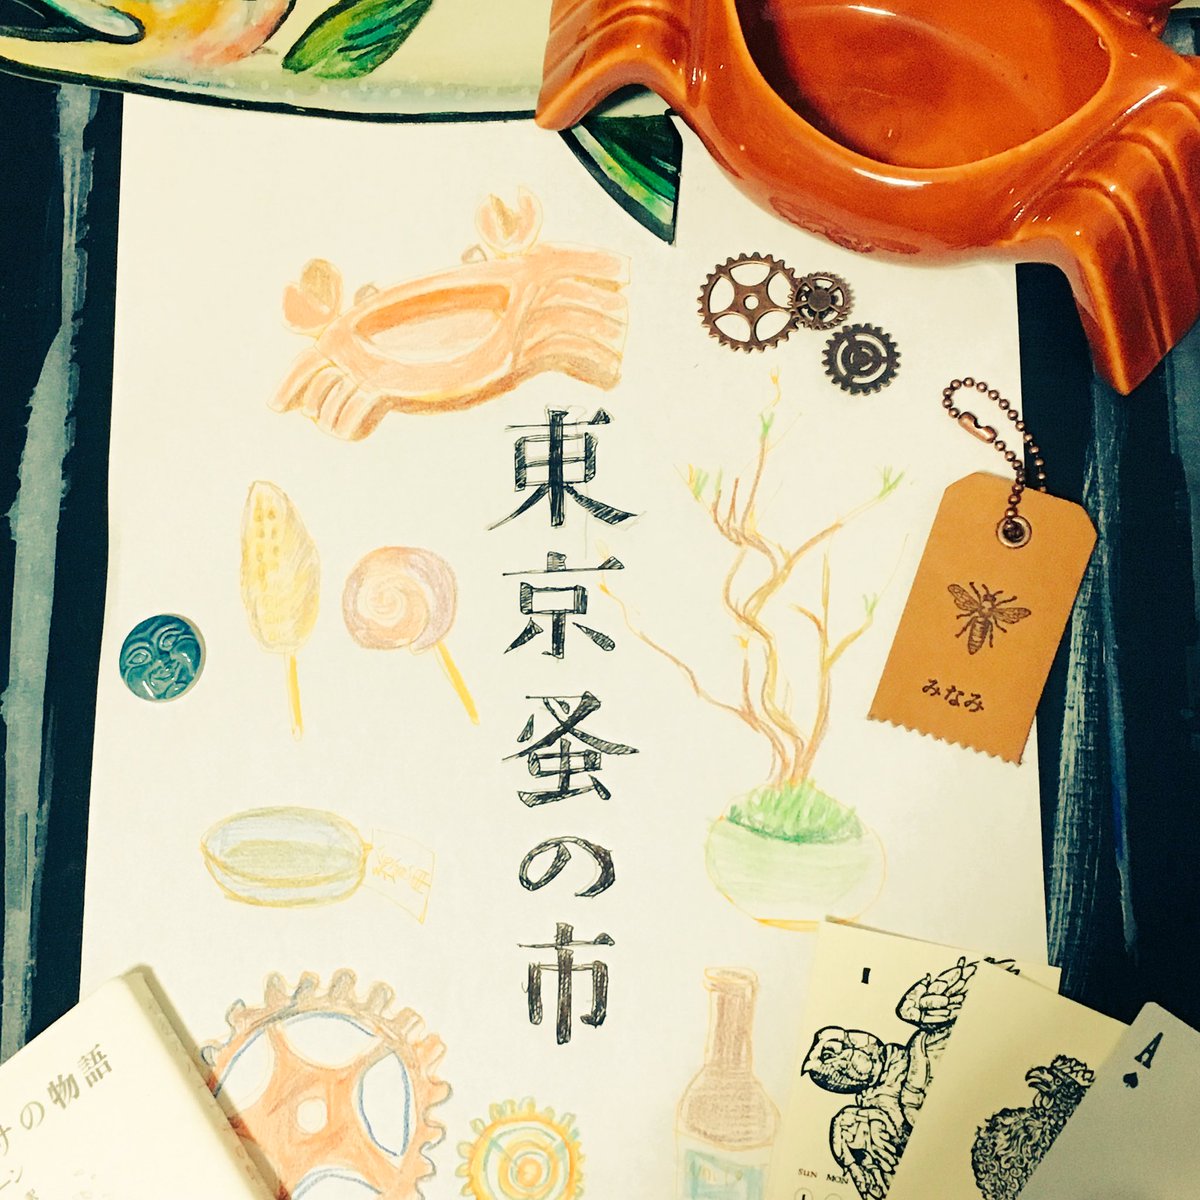 調布でやってる東京蚤の市が楽しすぎて熱がでた(^_^)2日目も行きたい(;_;)盆栽と椅子も買いました!とても混んでるけどぜひ行って欲しいし、いくならたくさん持って帰れるような準備を?#東京蚤の市  #京王閣 